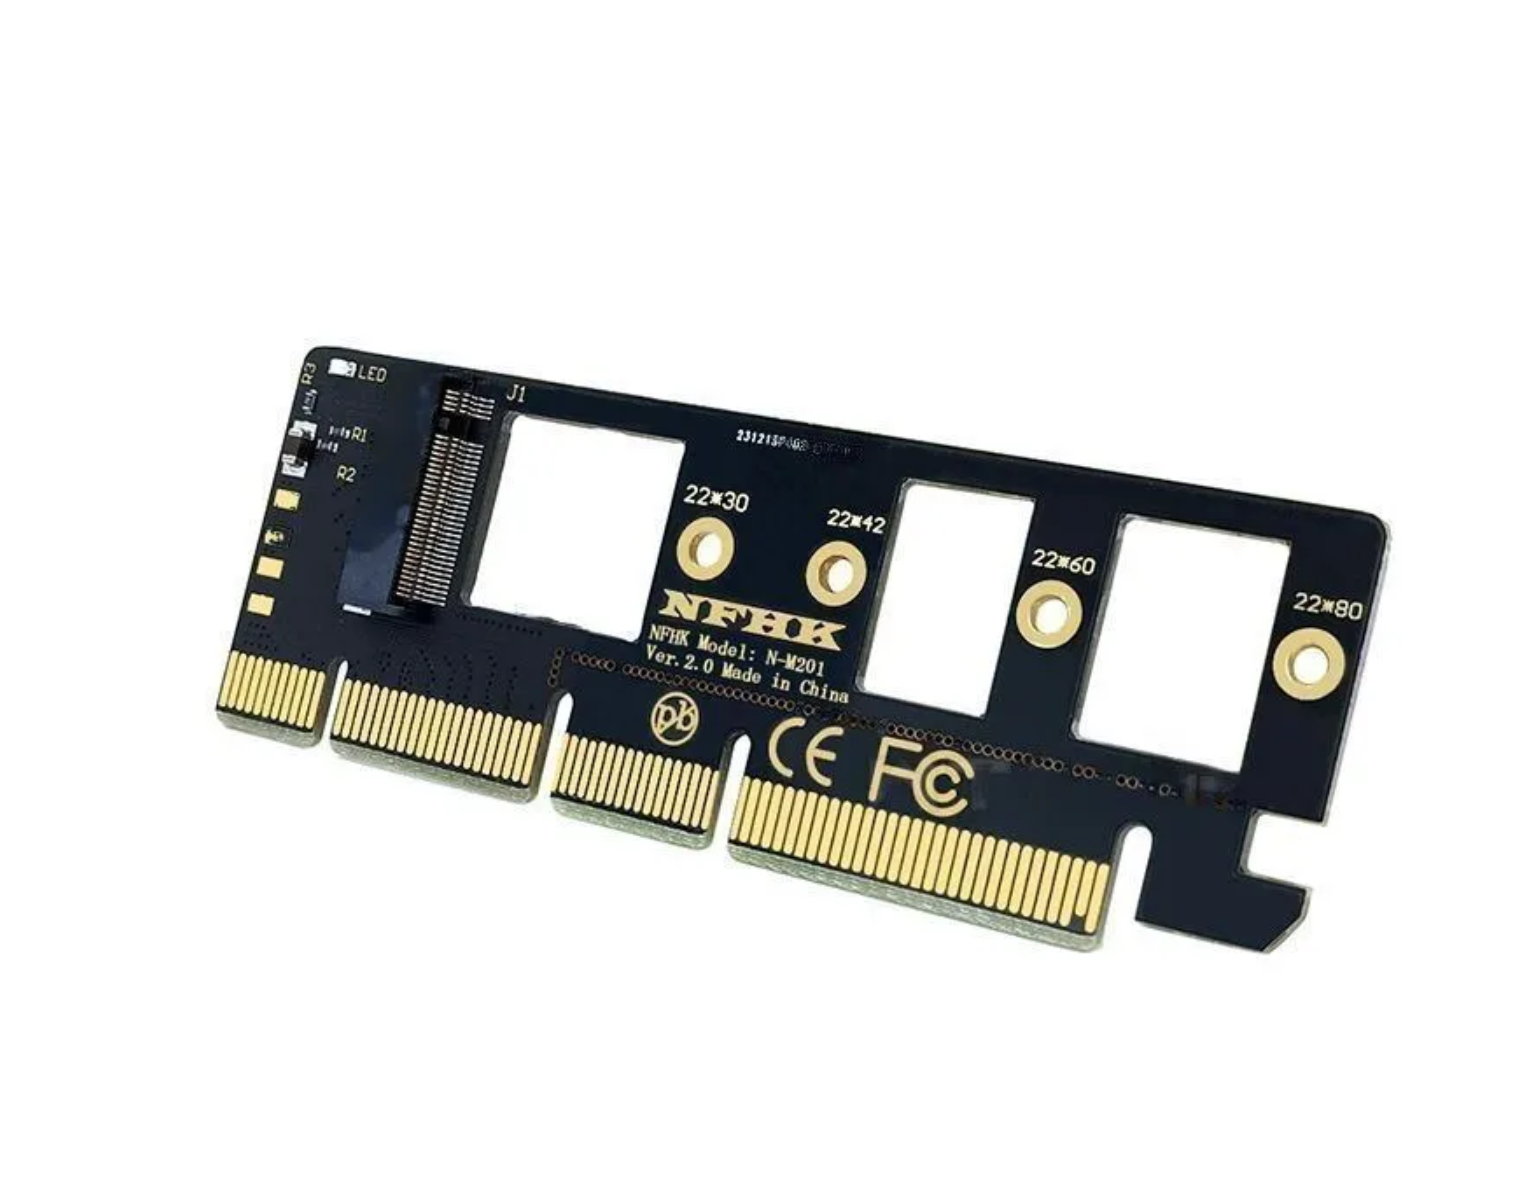 Адаптер, переходник для установки SSD M.2 ( NVMe ) в слот PCI-E 3.0 x 16 PCIe m2 NVMe Адаптер PCI Express X16 X8 X4